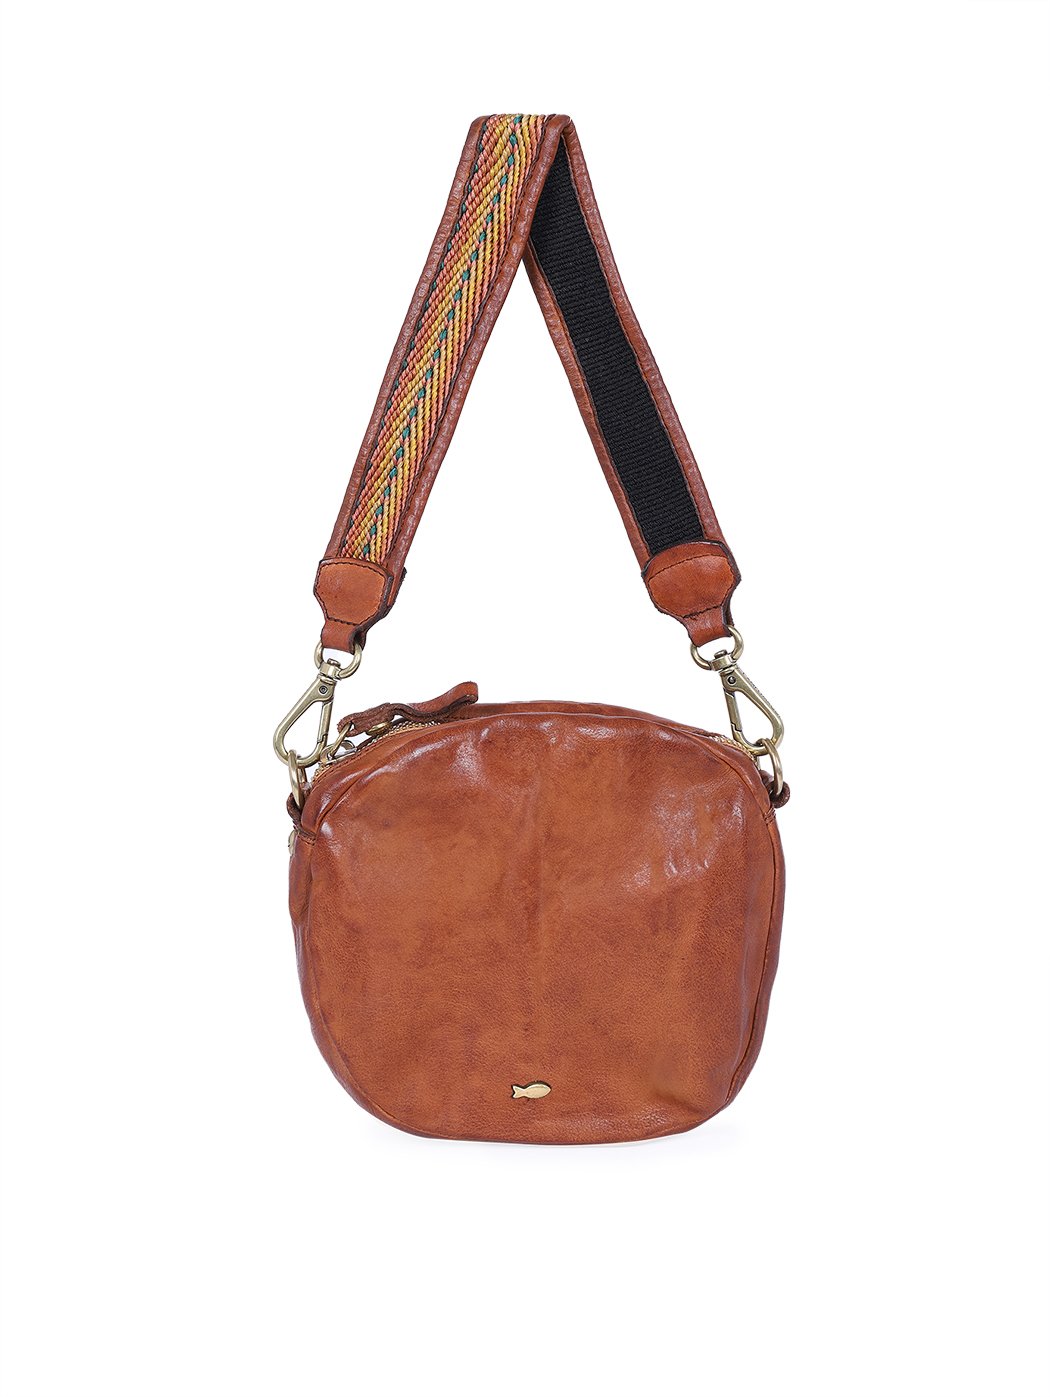 Круглая сумочка кросс – боди с плетеной ручкой коричневого цвета